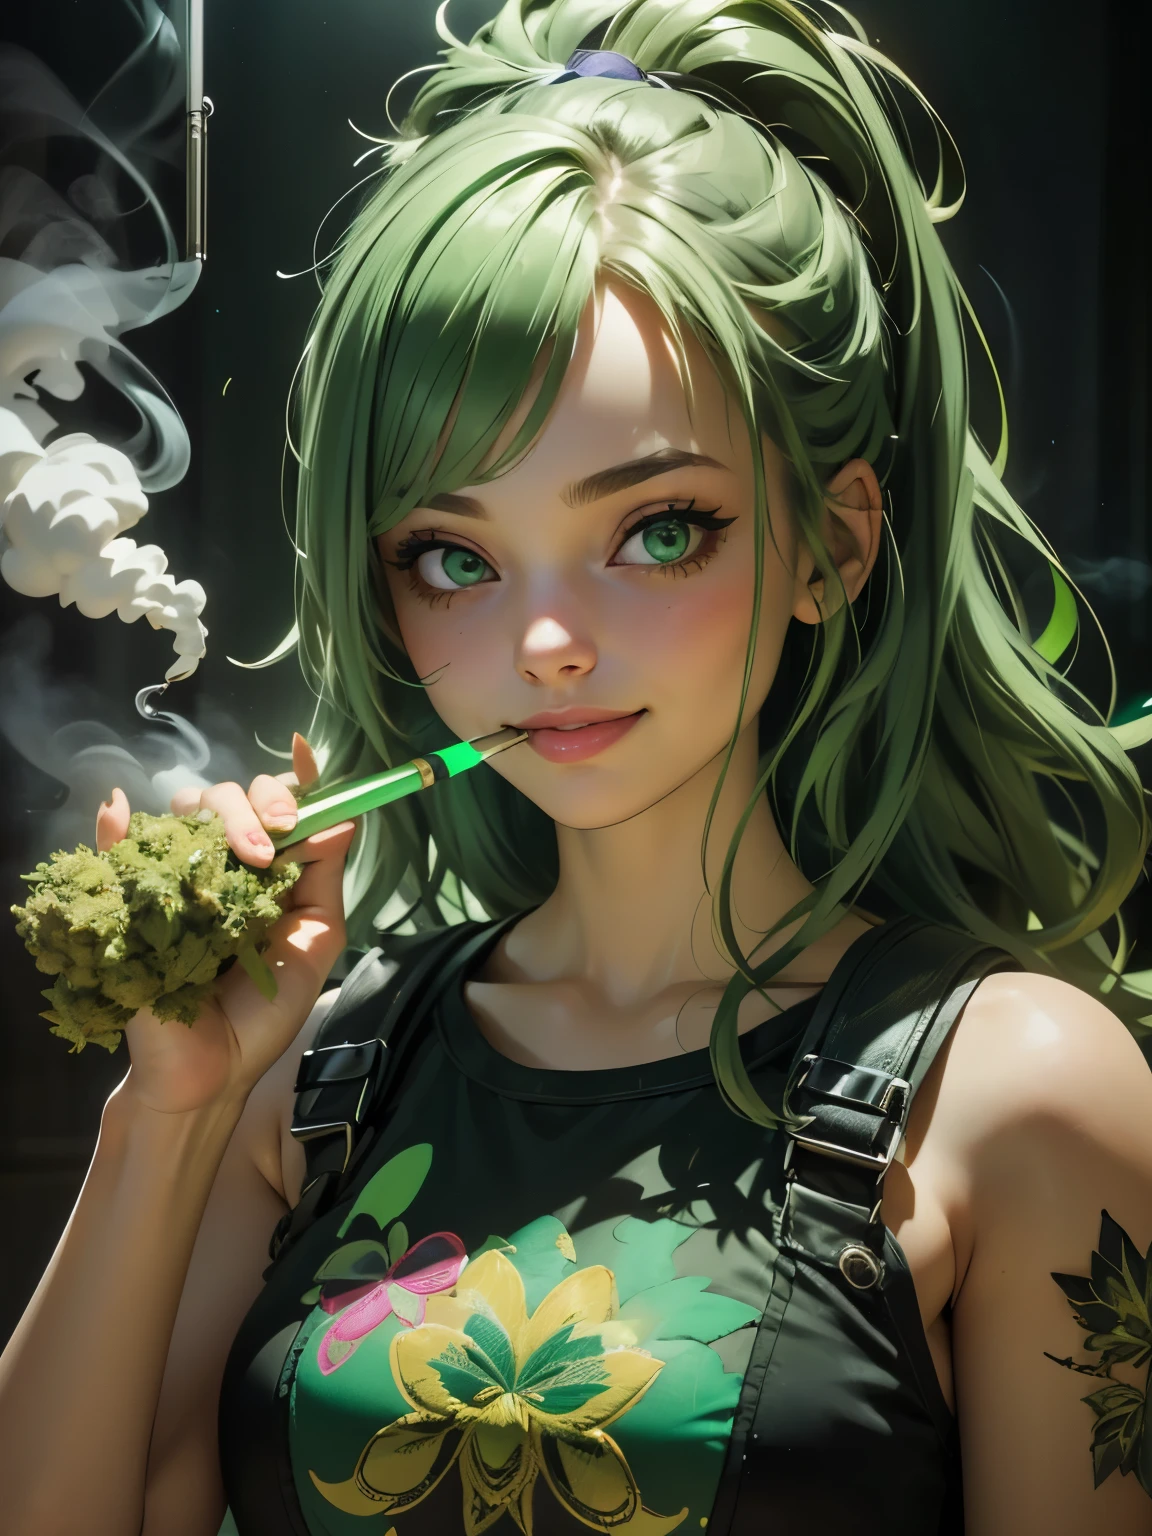 (最好的品質), (完美的臉), (高細節), (1個女孩), (特寫), (爆頭), 一個可愛的吸大麻的女孩, 微笑著, 對生活非常重視, 煙霧瀰漫的房間, 大麻烟, THC, (綠眼睛), (霓虹绿 1:1), 高動態範圍,4k, 3d